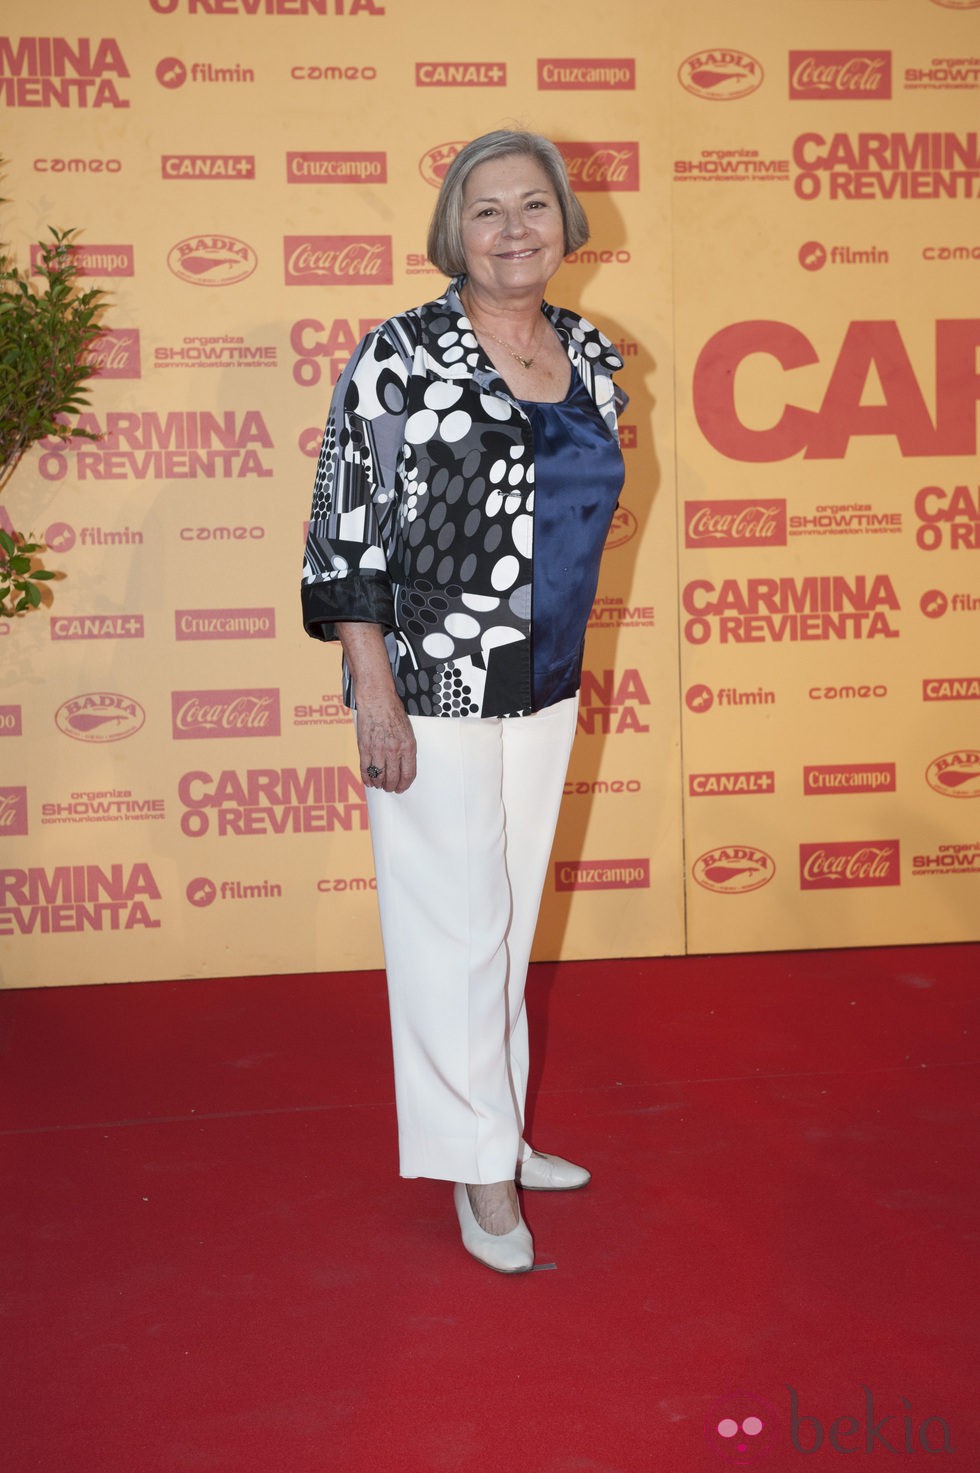 Tina Sainz en el estreno de 'Carmina o revienta'